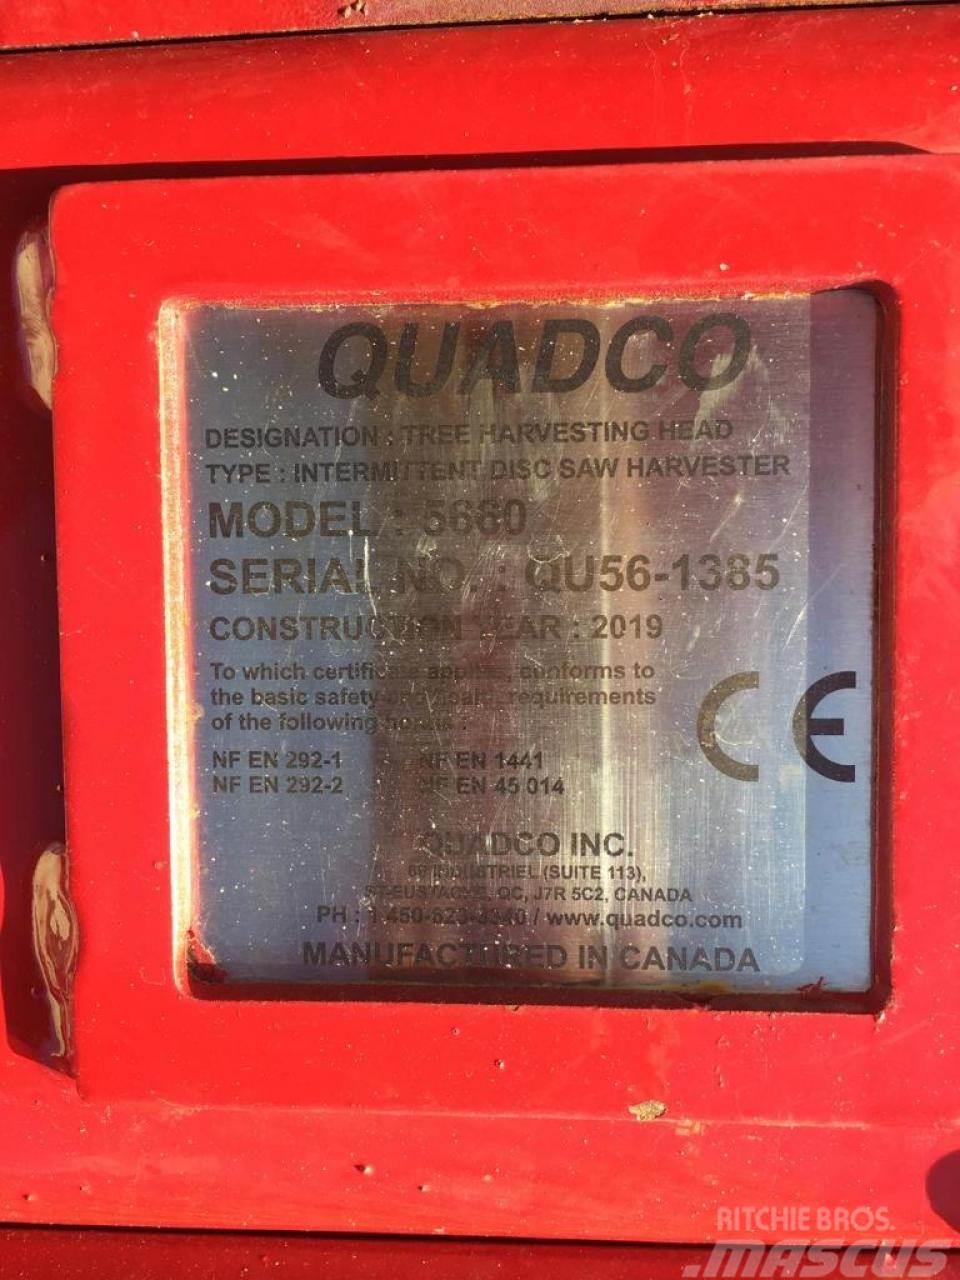  Quadco 5660 Gripere